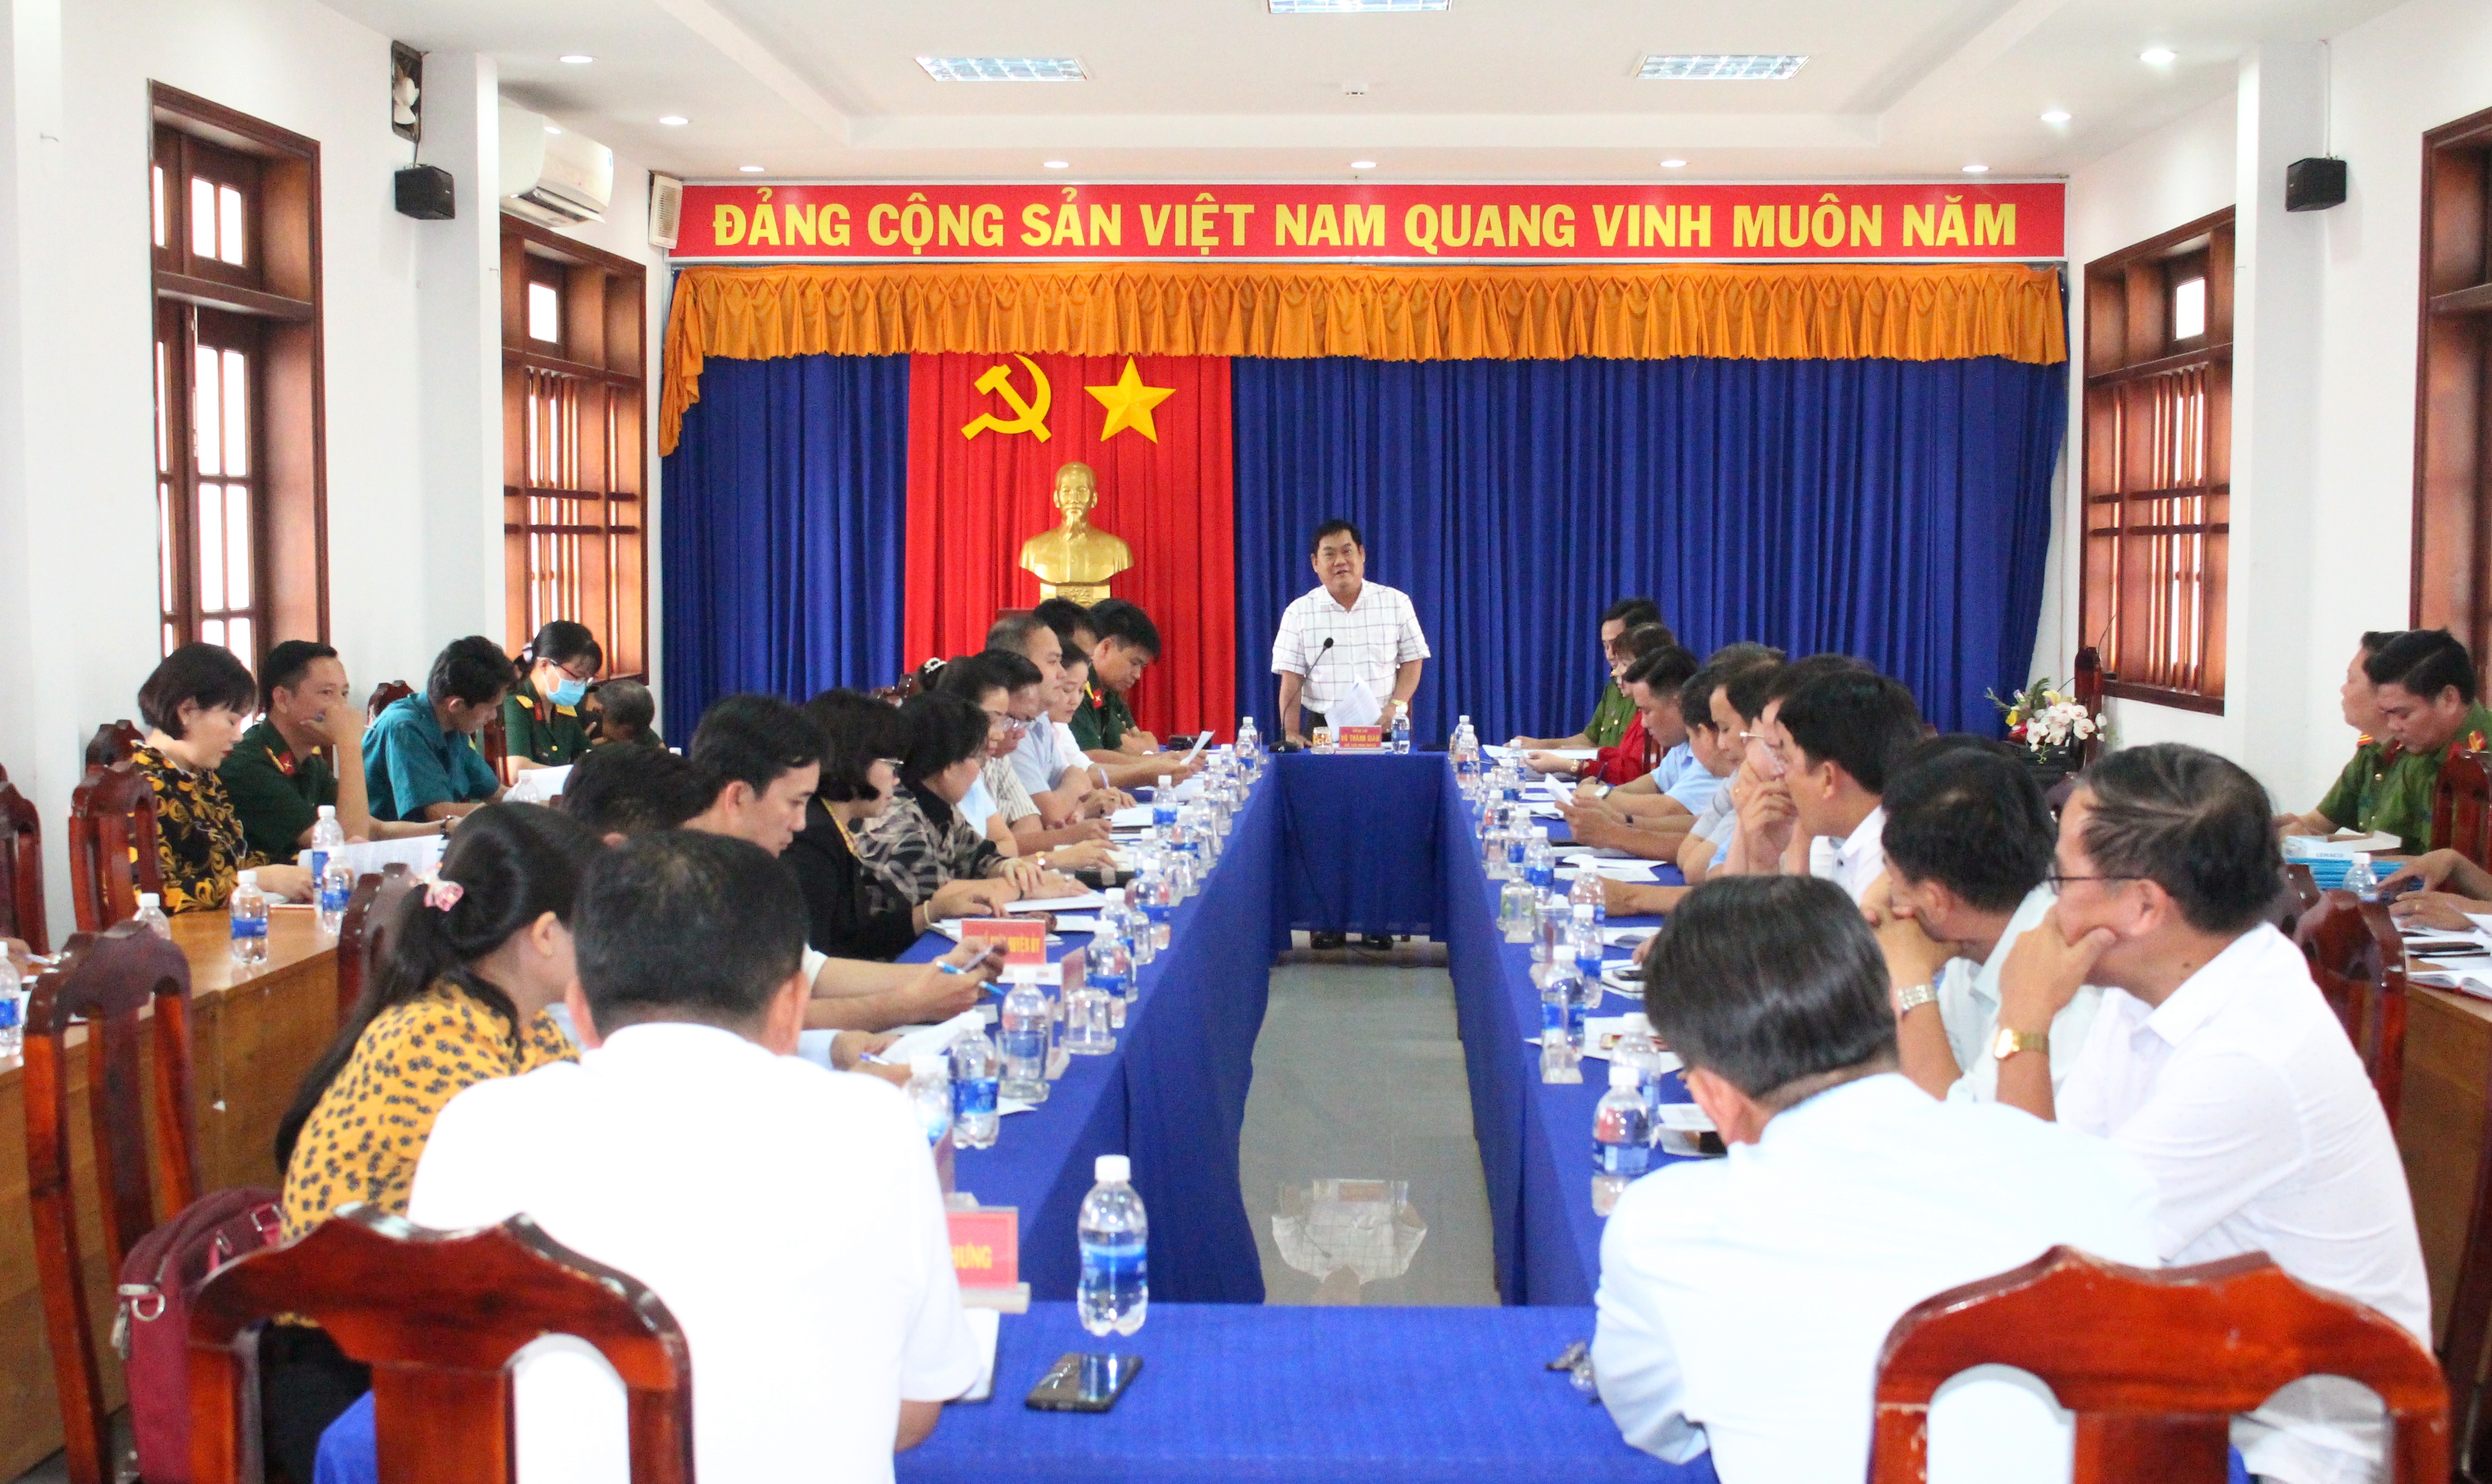 ông Võ Thành Giàu - Chủ tịch UBND huyện, Chủ tịch Hội đồng nghĩa vụ quân sự huyện phát biểu chỉ đạo tại Hội nghị.